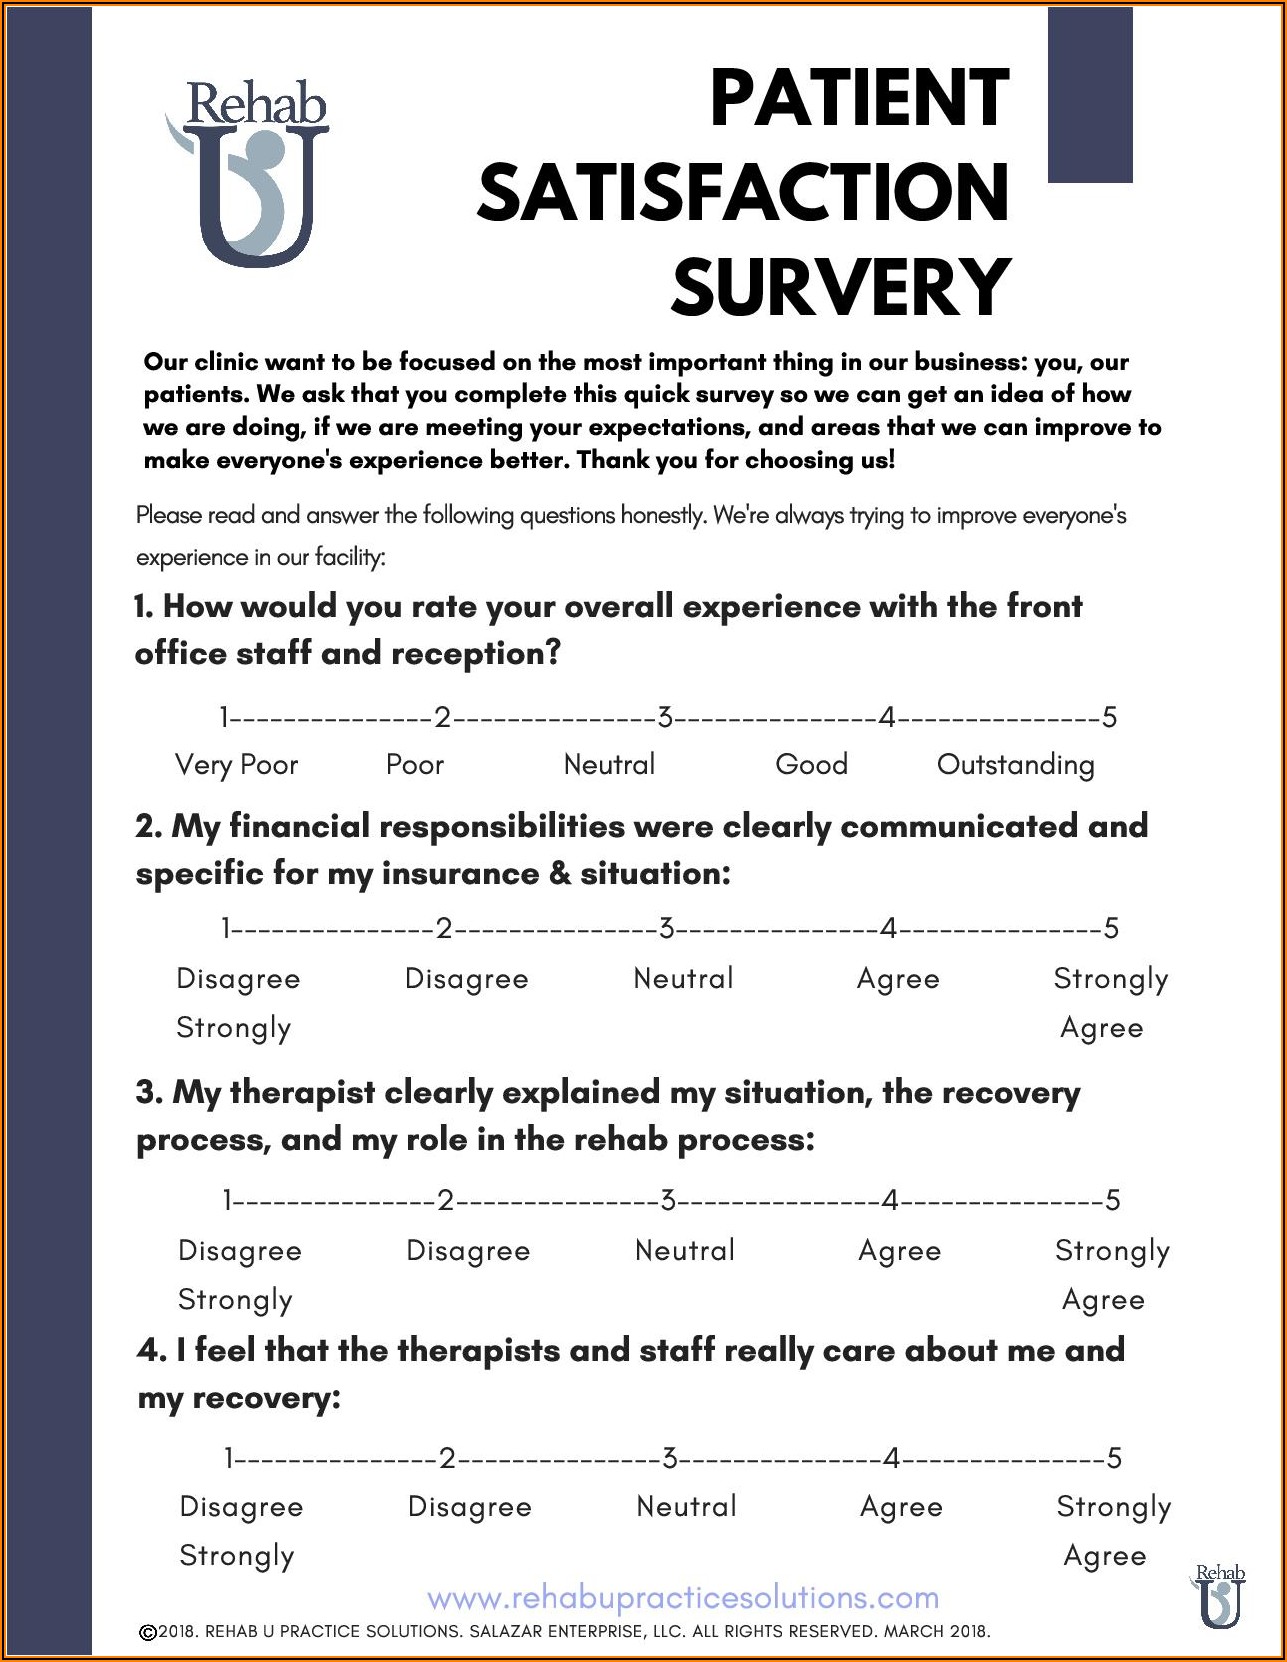 Patient Satisfaction Survey Questionnaire Free Download